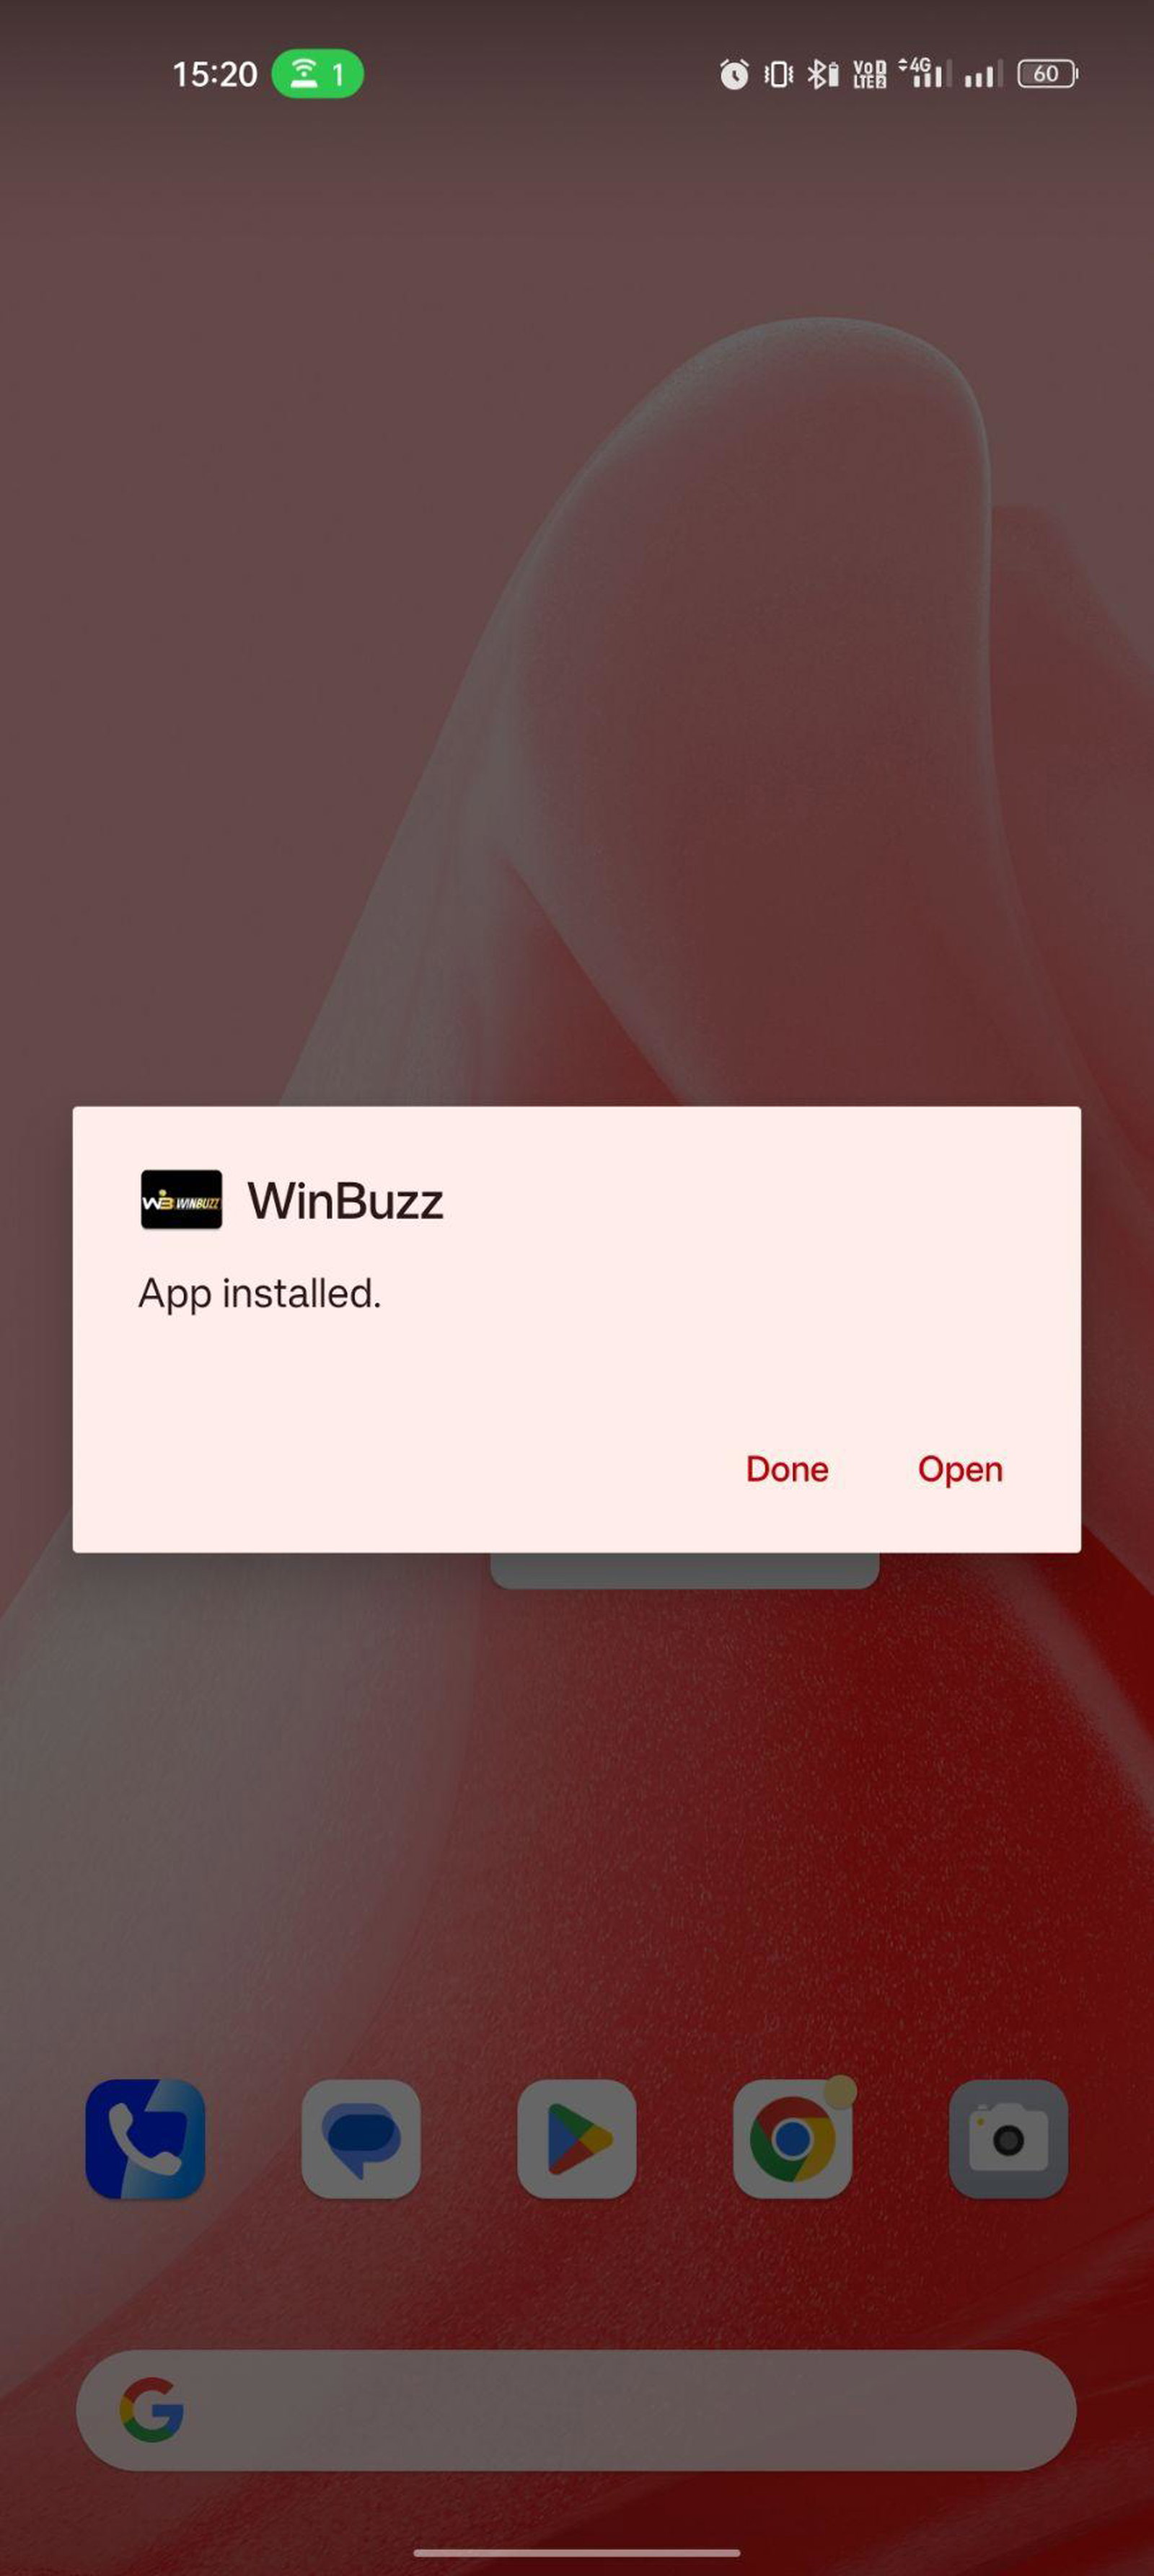 WinBuzz apk installed